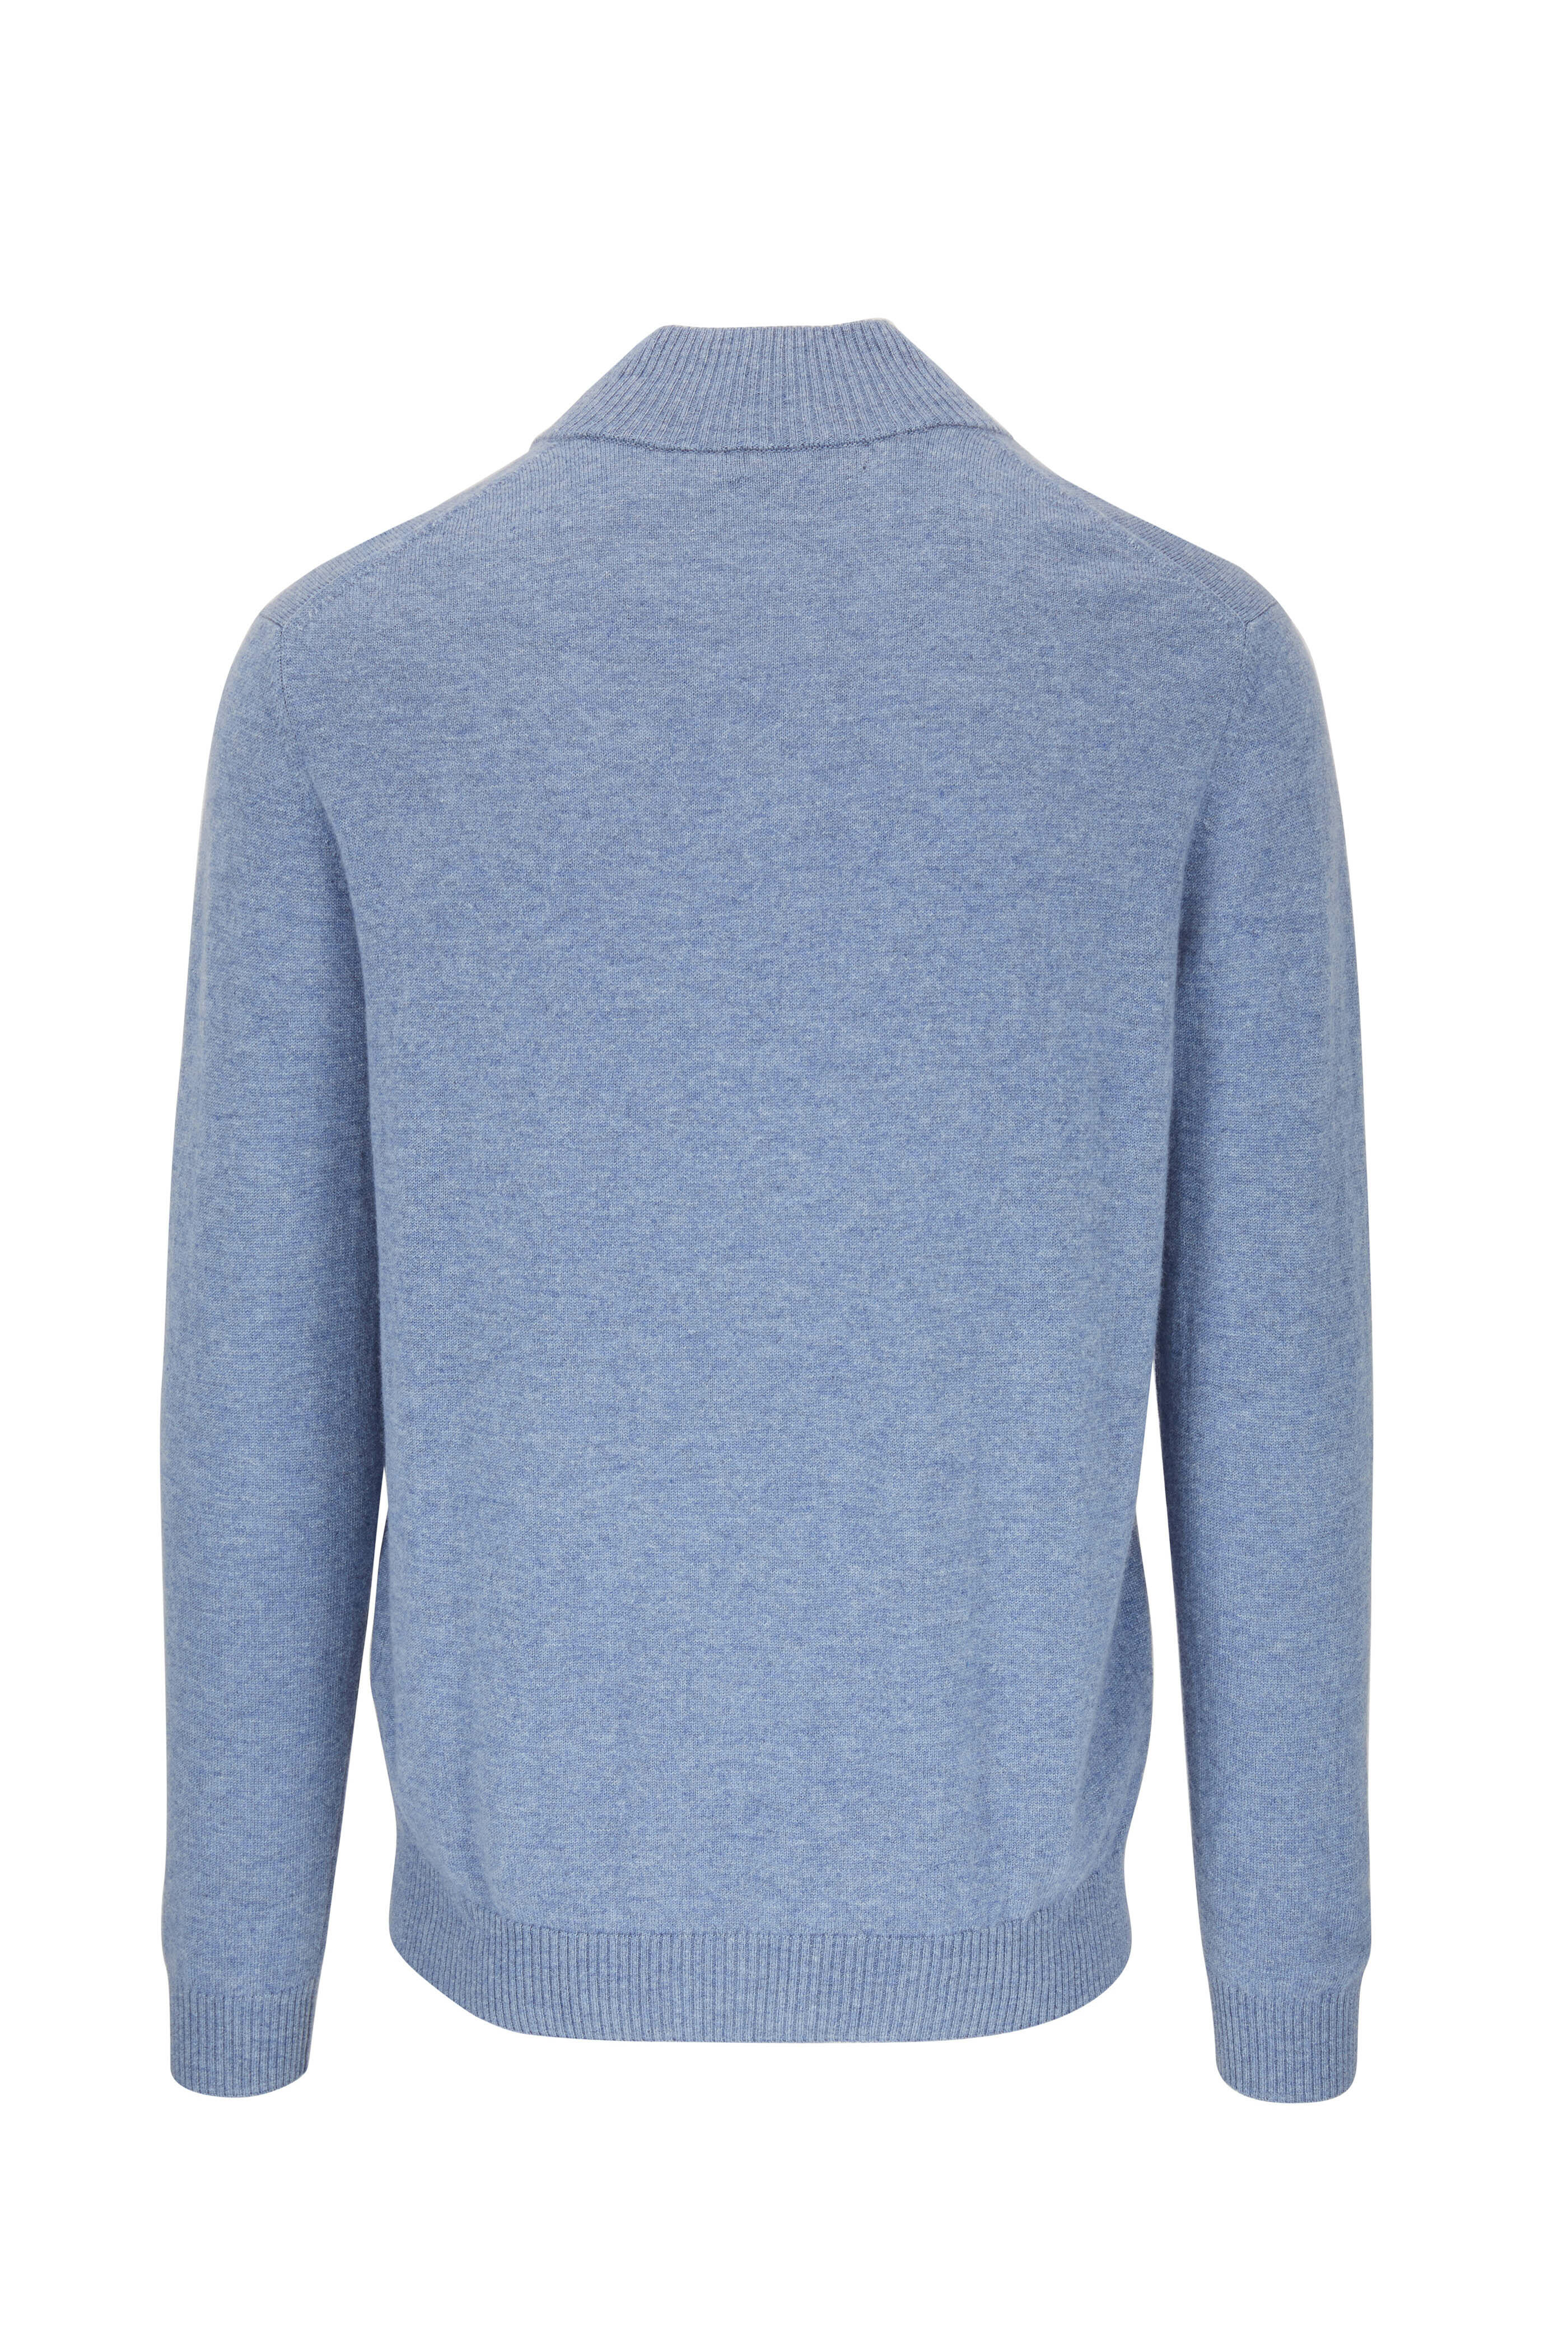 Kinross - Washed Blue Cashmere Quarter-Zip Pullover